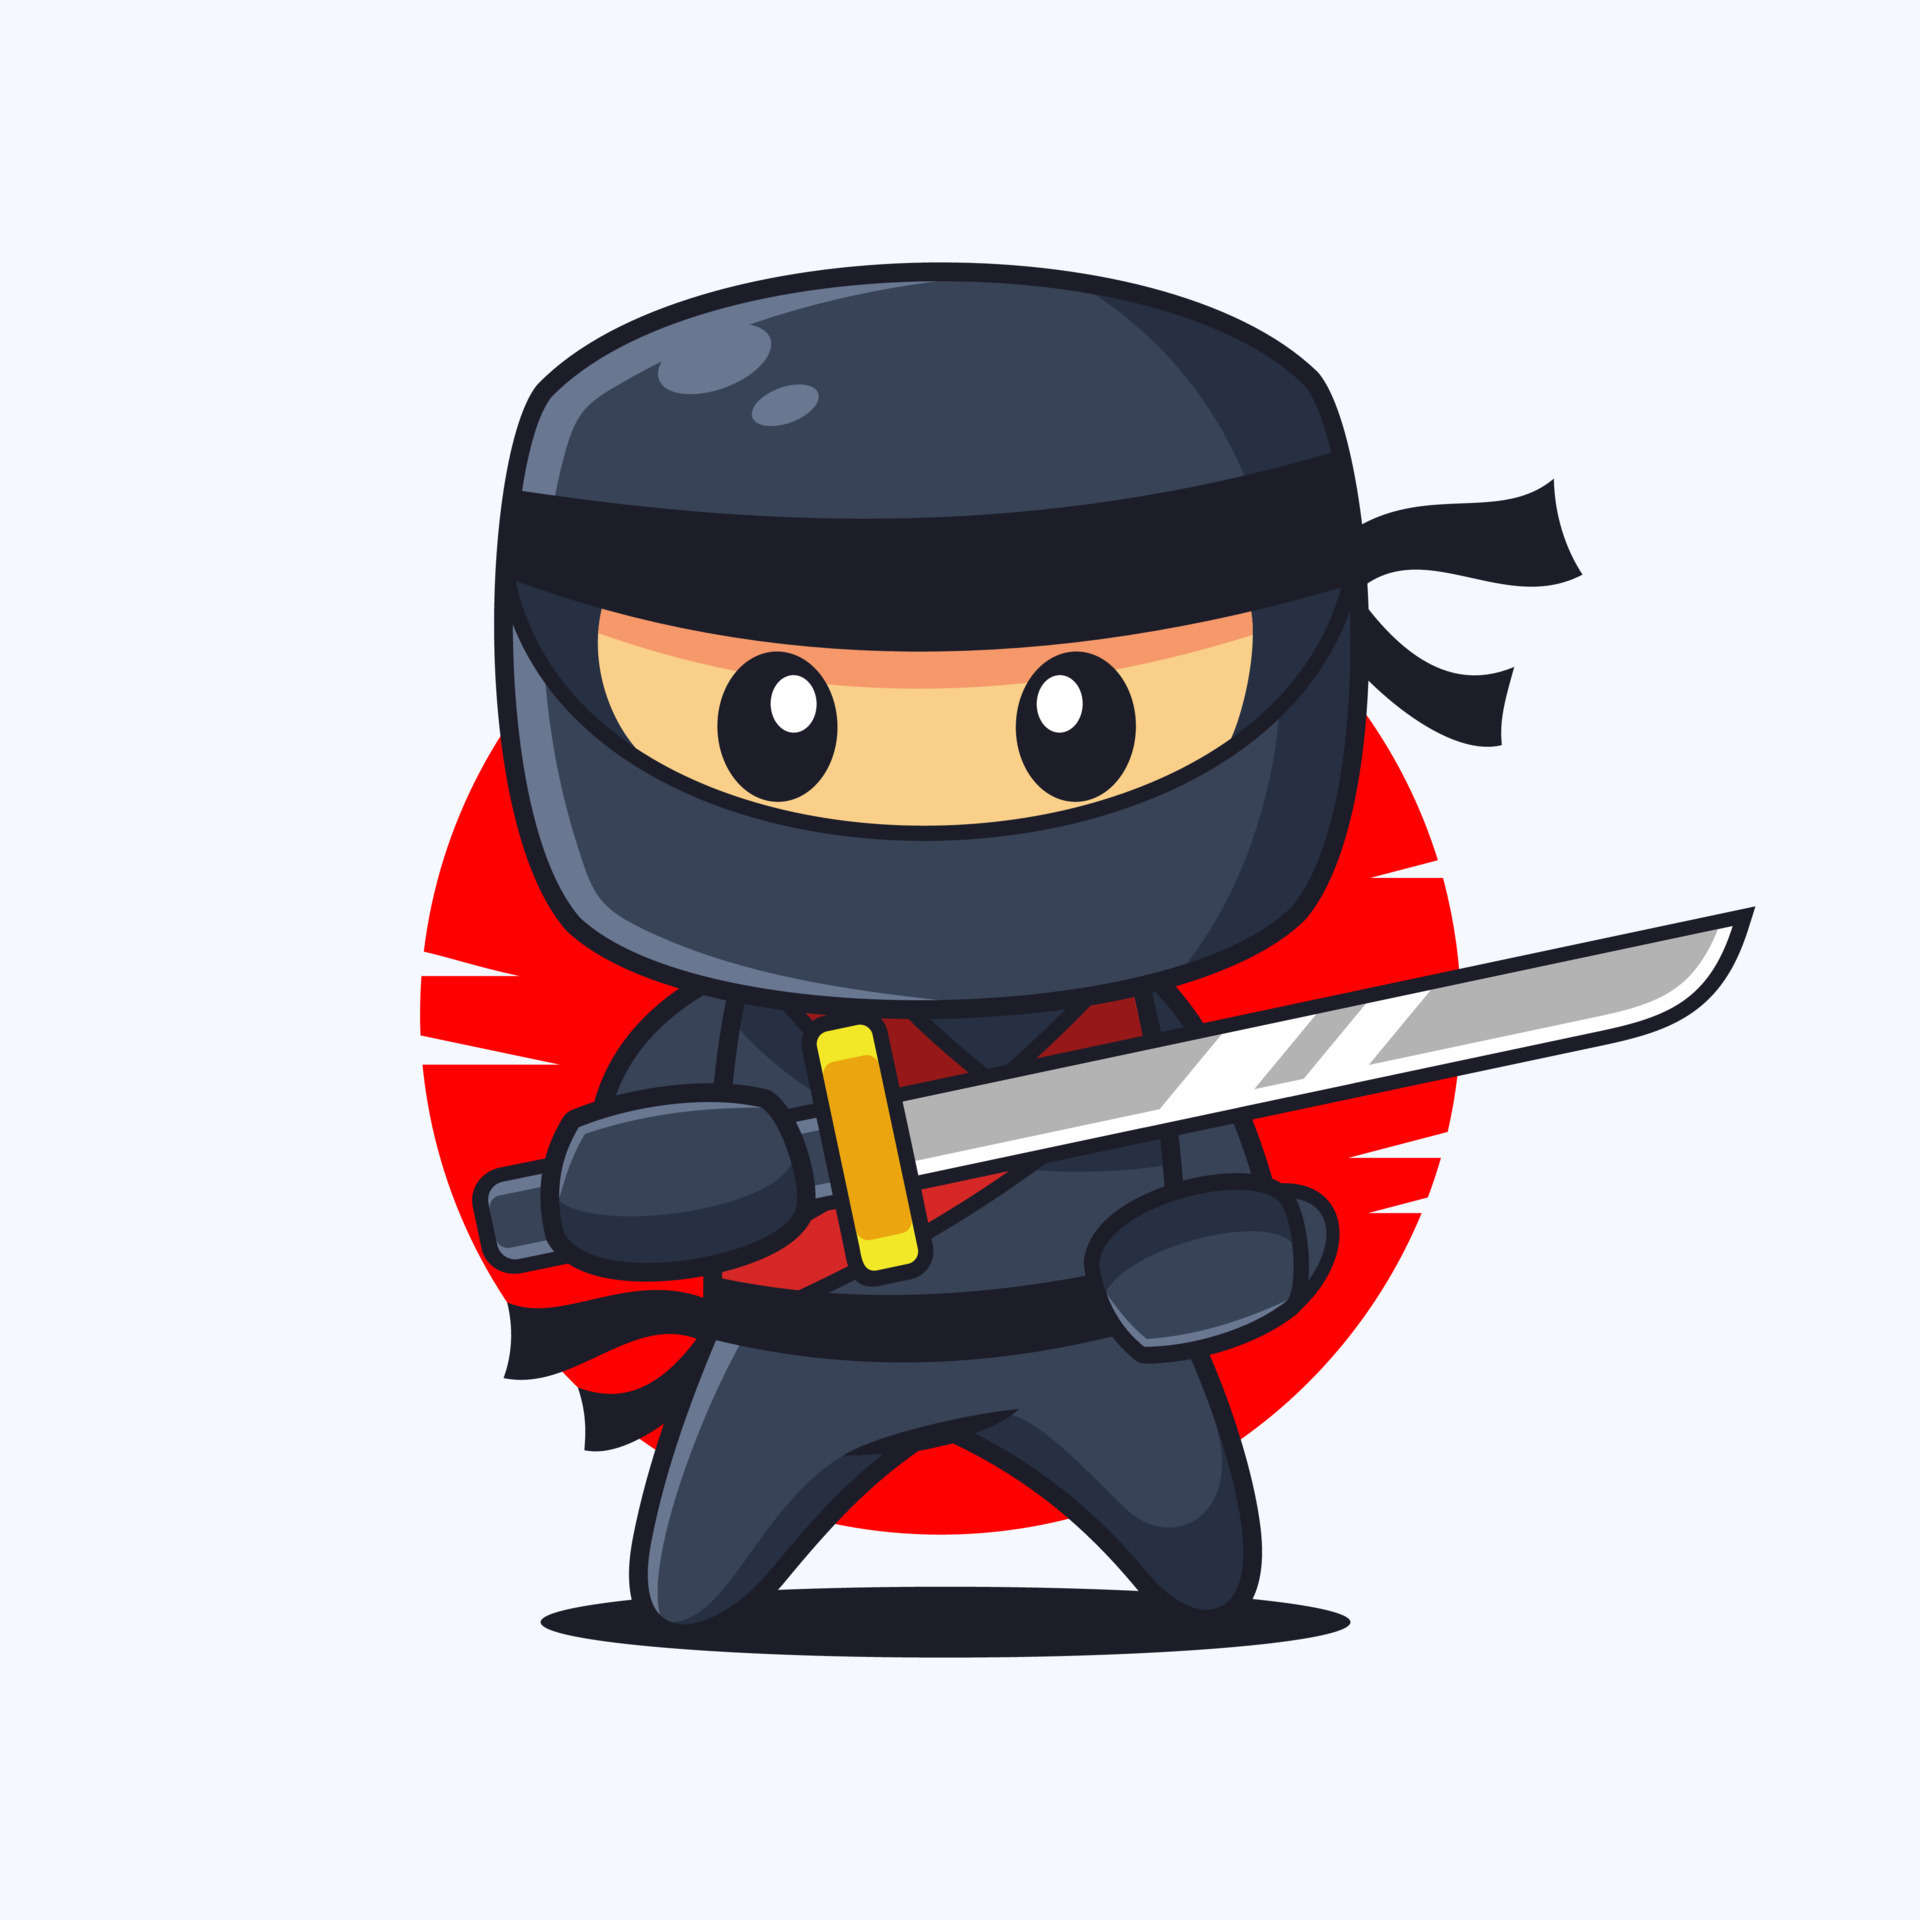 Ninja preto dos desenhos animados definir ação com espada